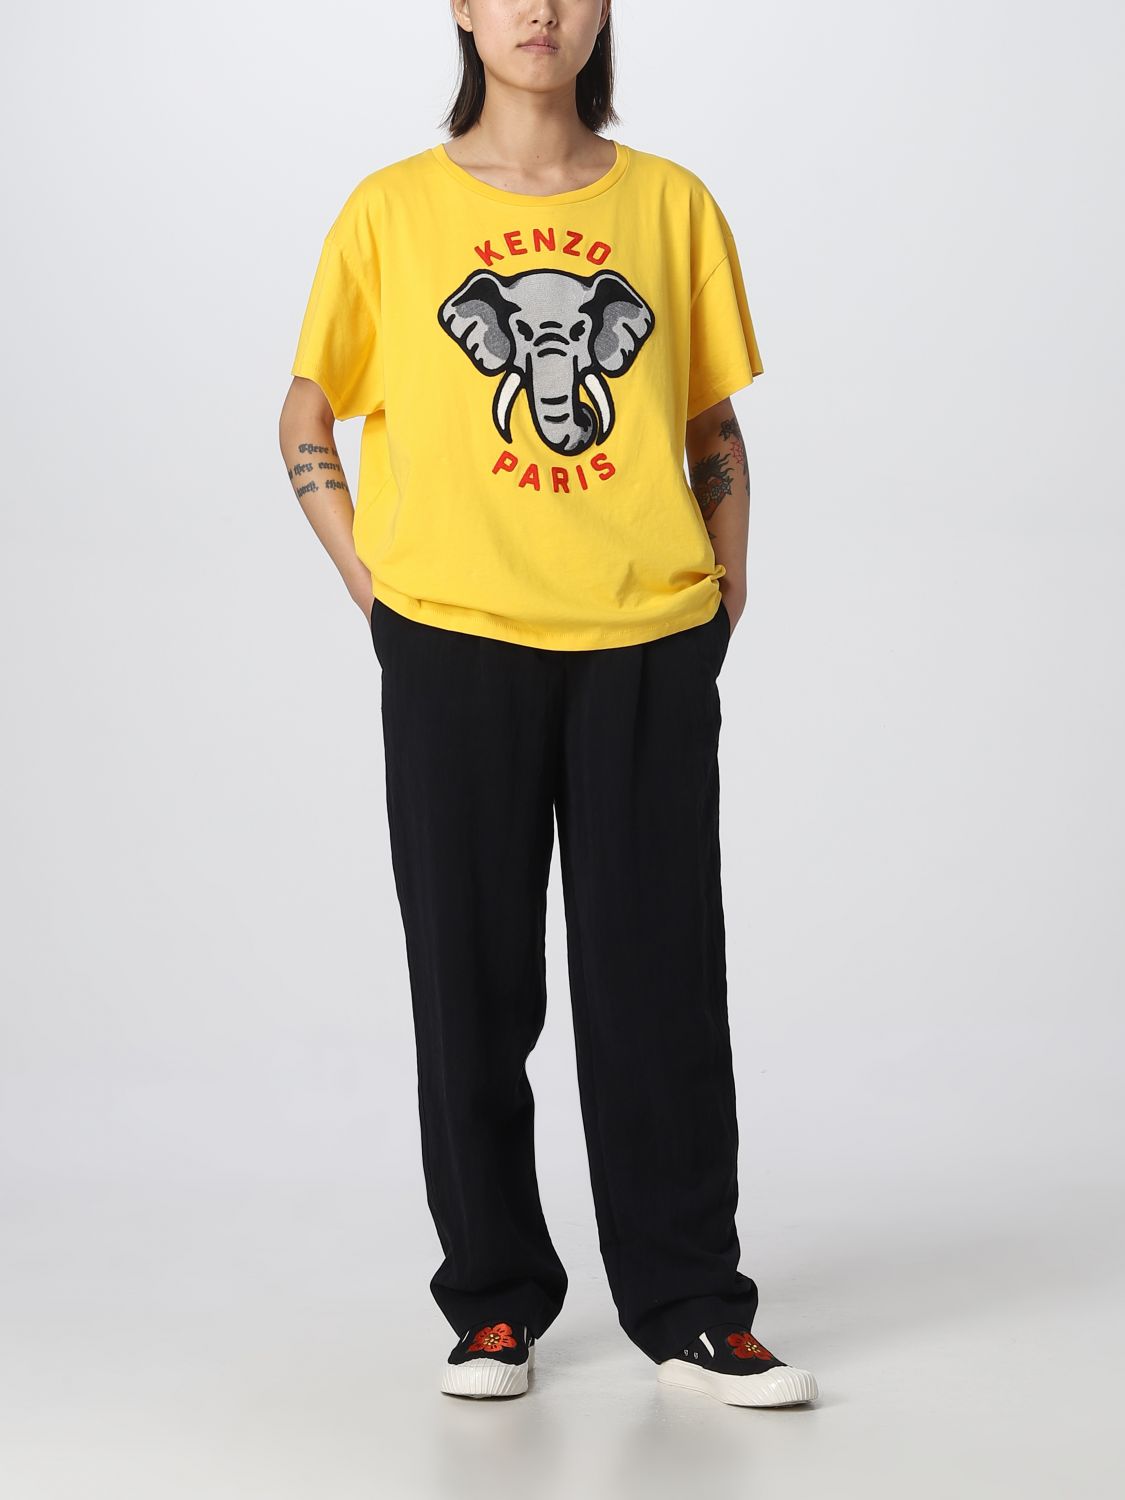 T-shirt Kenzo: T-shirt Elephant Kenzo in cotone giallo 2